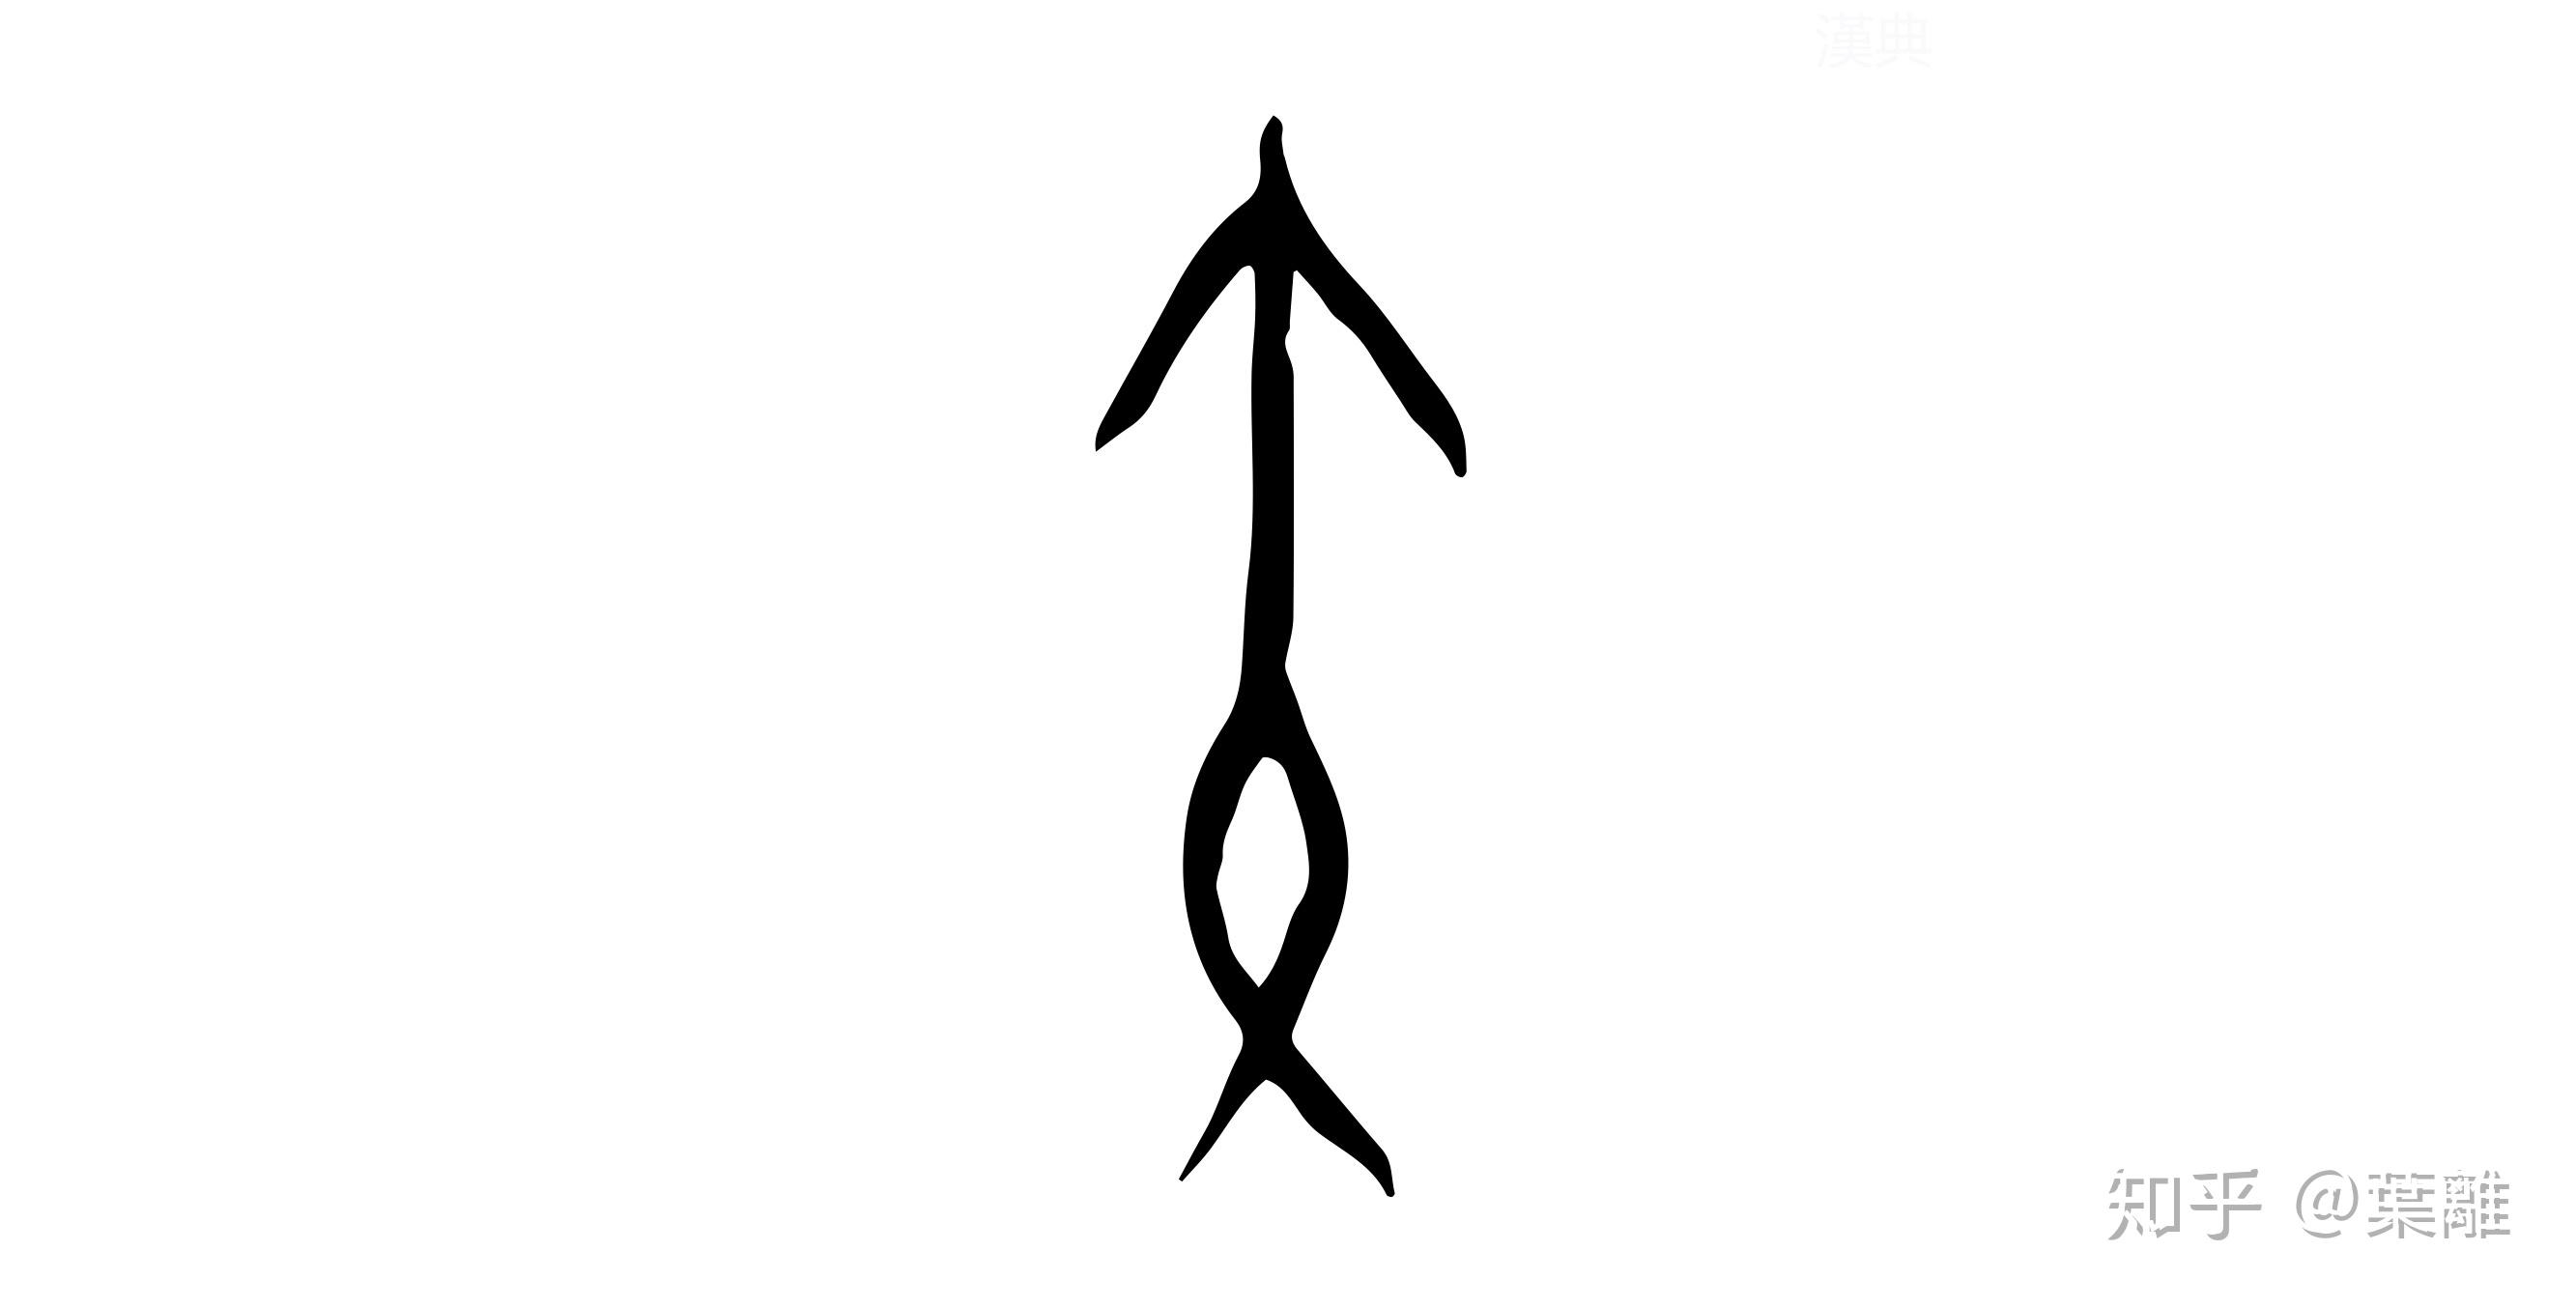 甲骨文 矢矢还代表誓言,如矢志不渝那么箭和矢有什么区别呢?